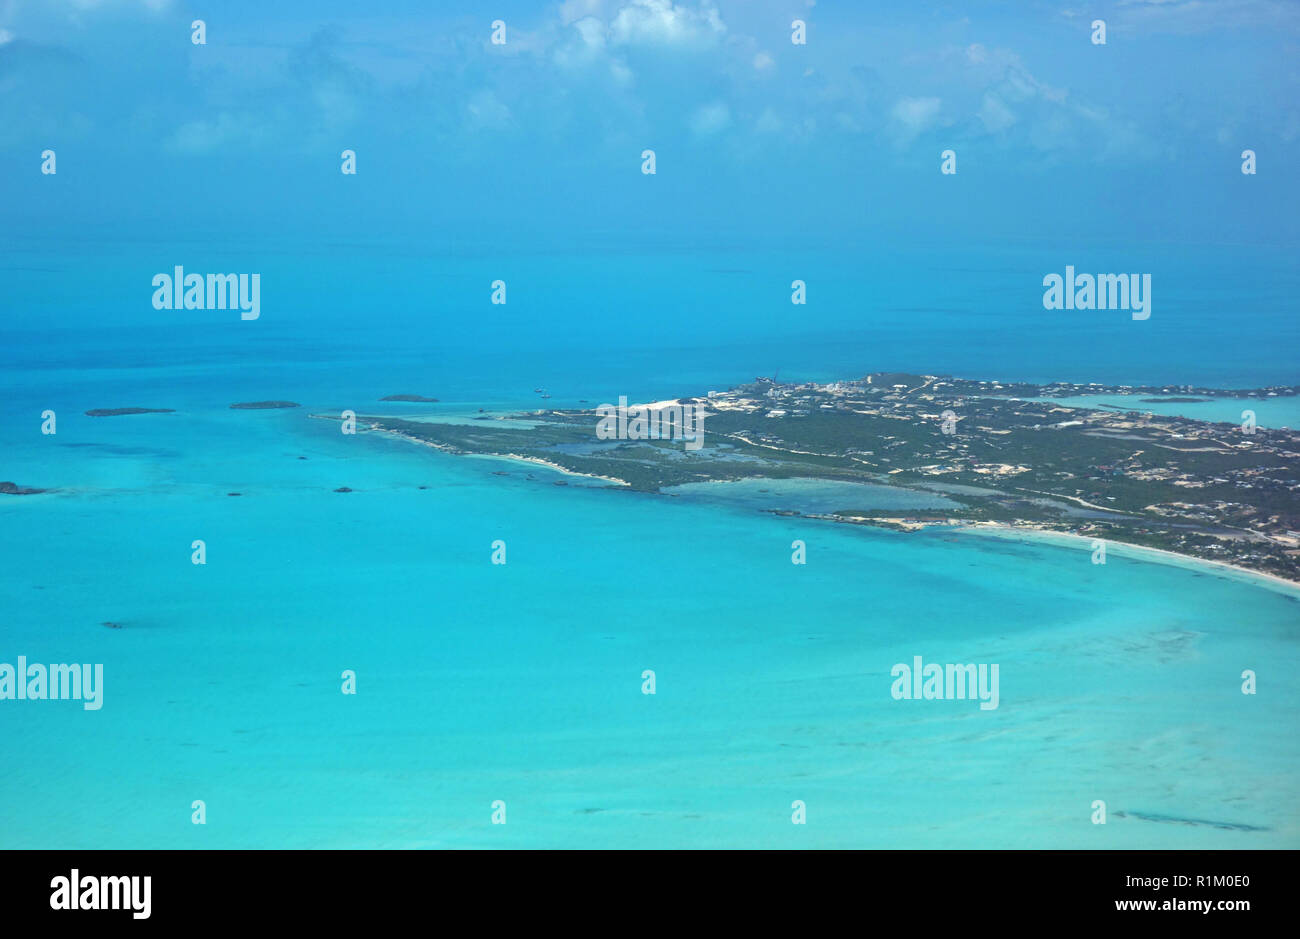 PROVIDENCIALES, ISLAS TURCAS Y CAICOS -8 Jul 2017- vista aérea de la isla de Providenciales (Provo) en las Islas Turcas y Caicos. Foto de stock